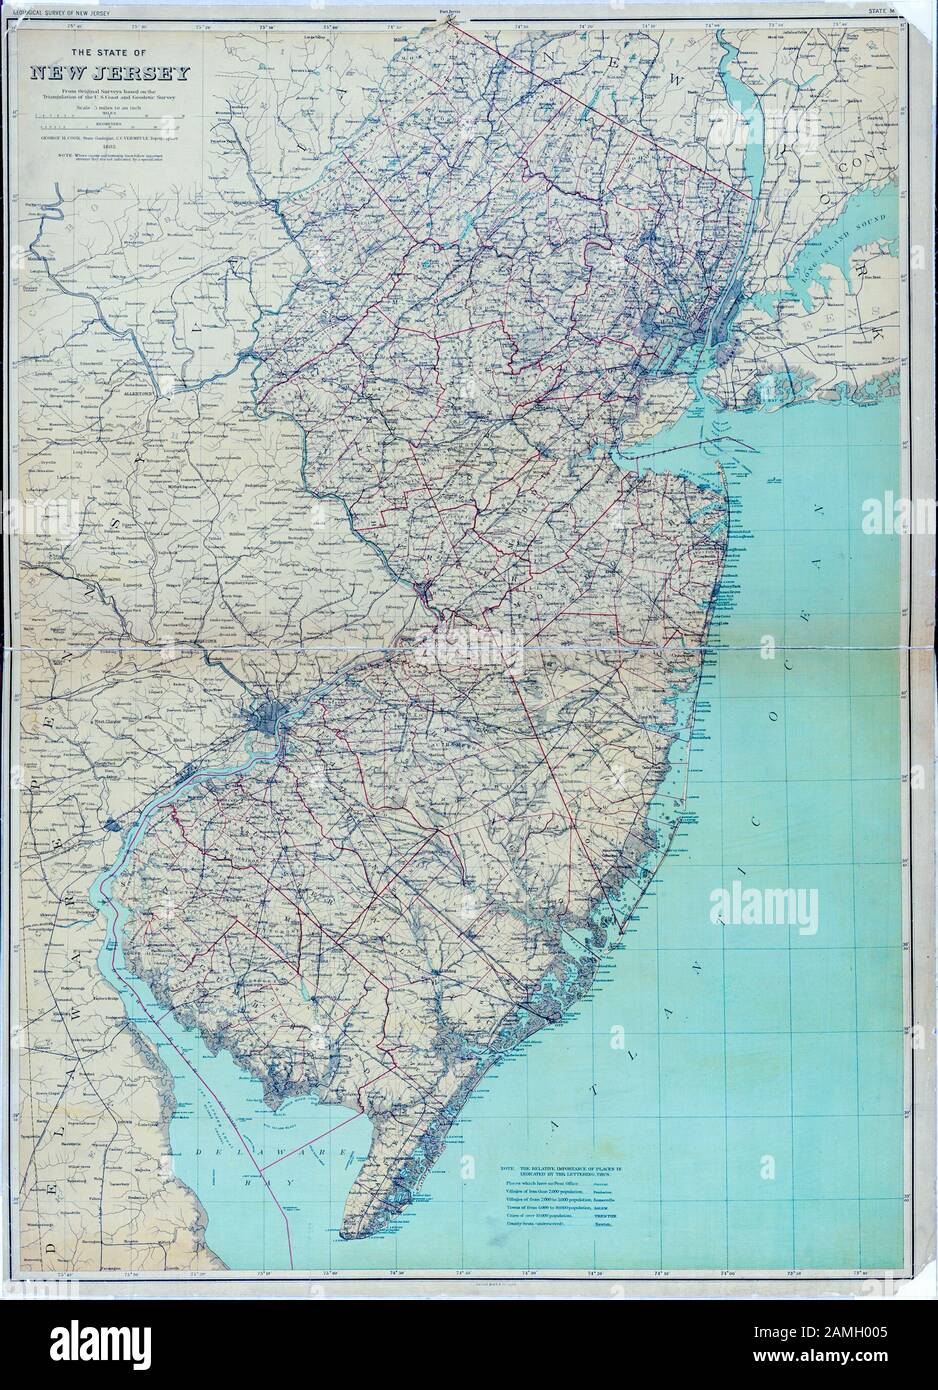 Farbkarte von New Jersey, einem nordöstlichsten US-Staat, der den Atlantik und die Delaware Bay zeigt, veröffentlicht vom New Jersey Geological Survey und Julius Bien and Co, im Jahr 1886. Aus der New York Public Library. () Stockfoto